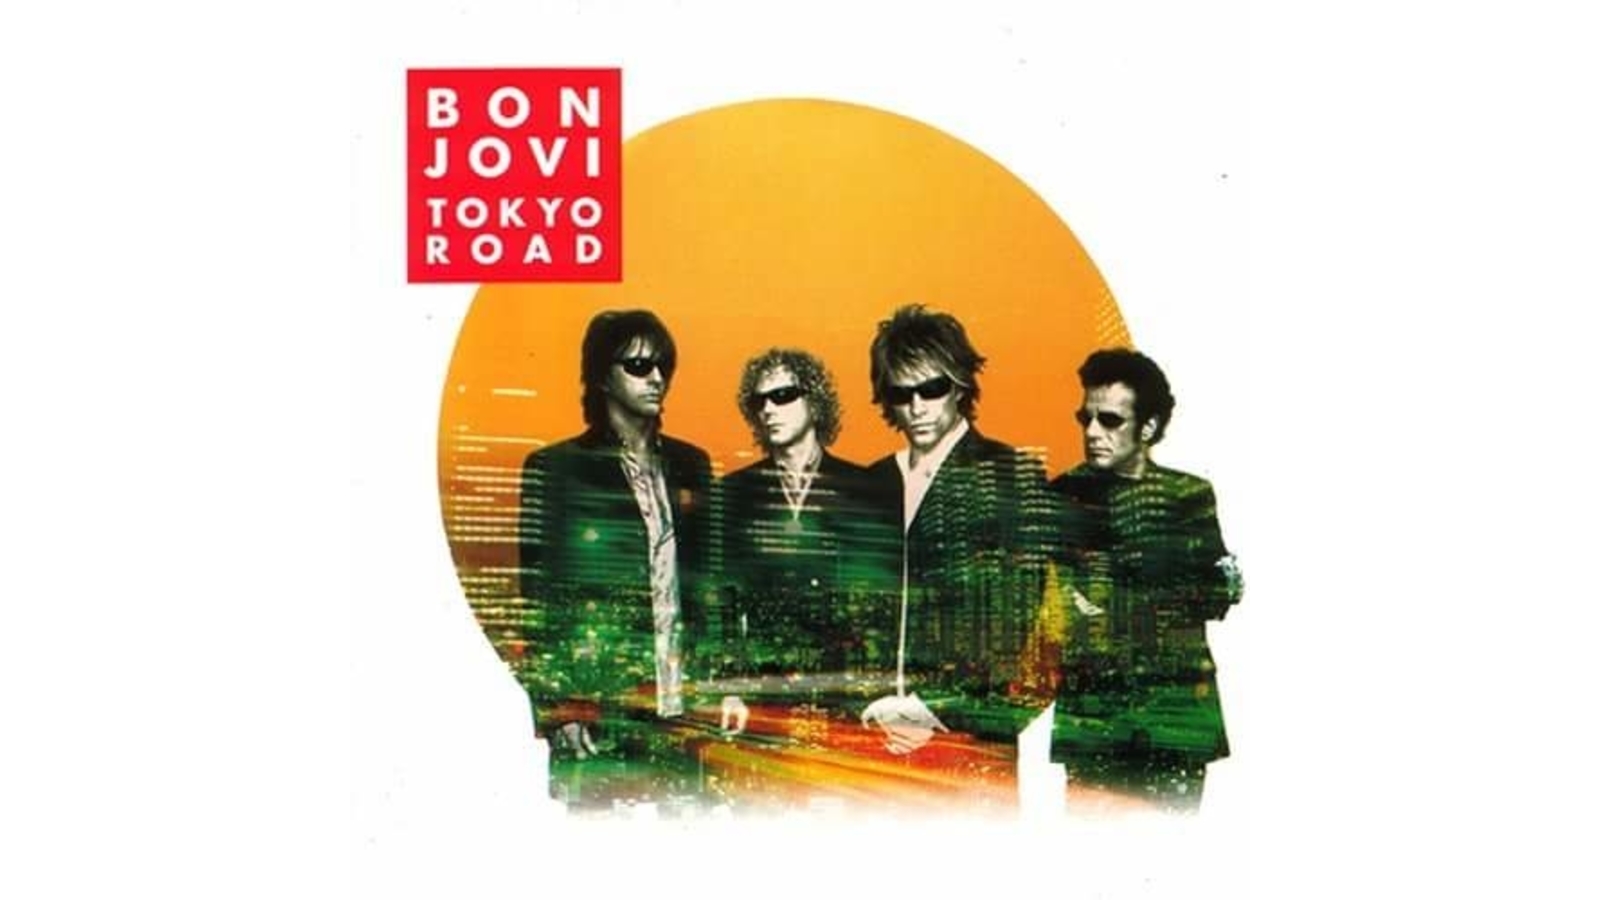 Bon Jovi   Tokyo Road Computer Wallpapers Desktop